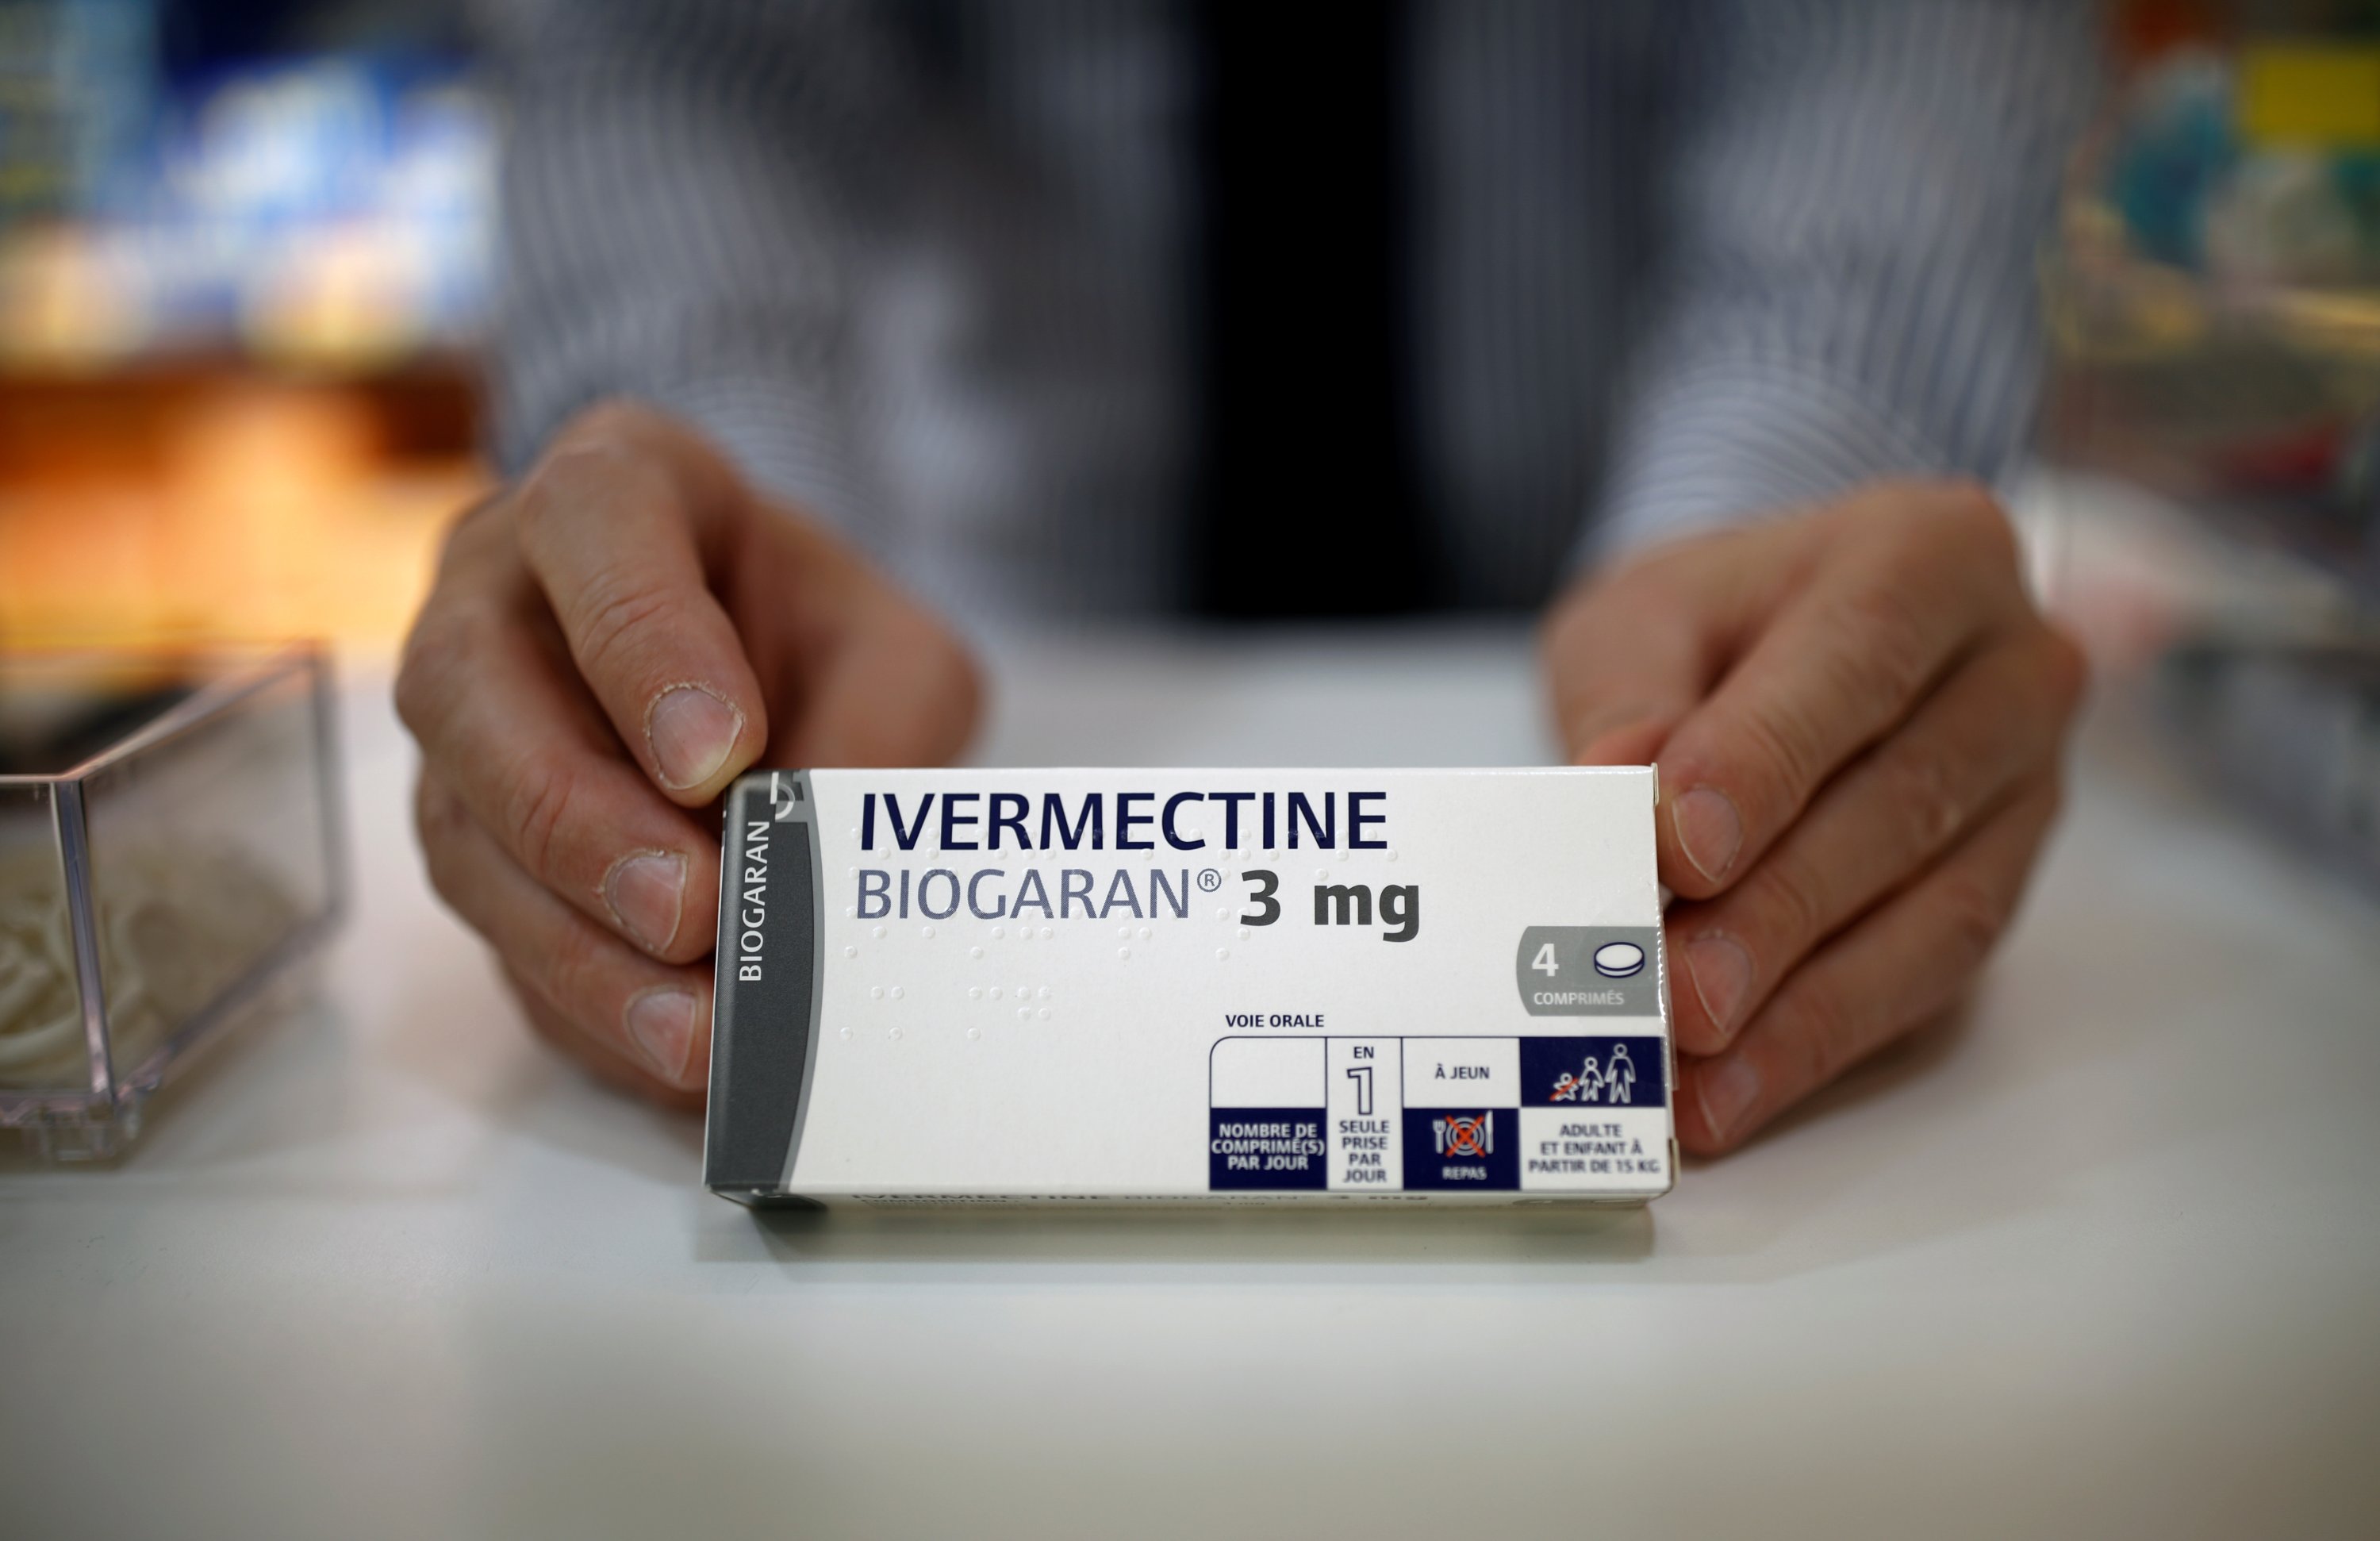 Sekotak obat Ivermectine, buatan Biogaran, dipajang di konter apotek, Paris, Prancis, 28 April 2020. (Foto Reuters)